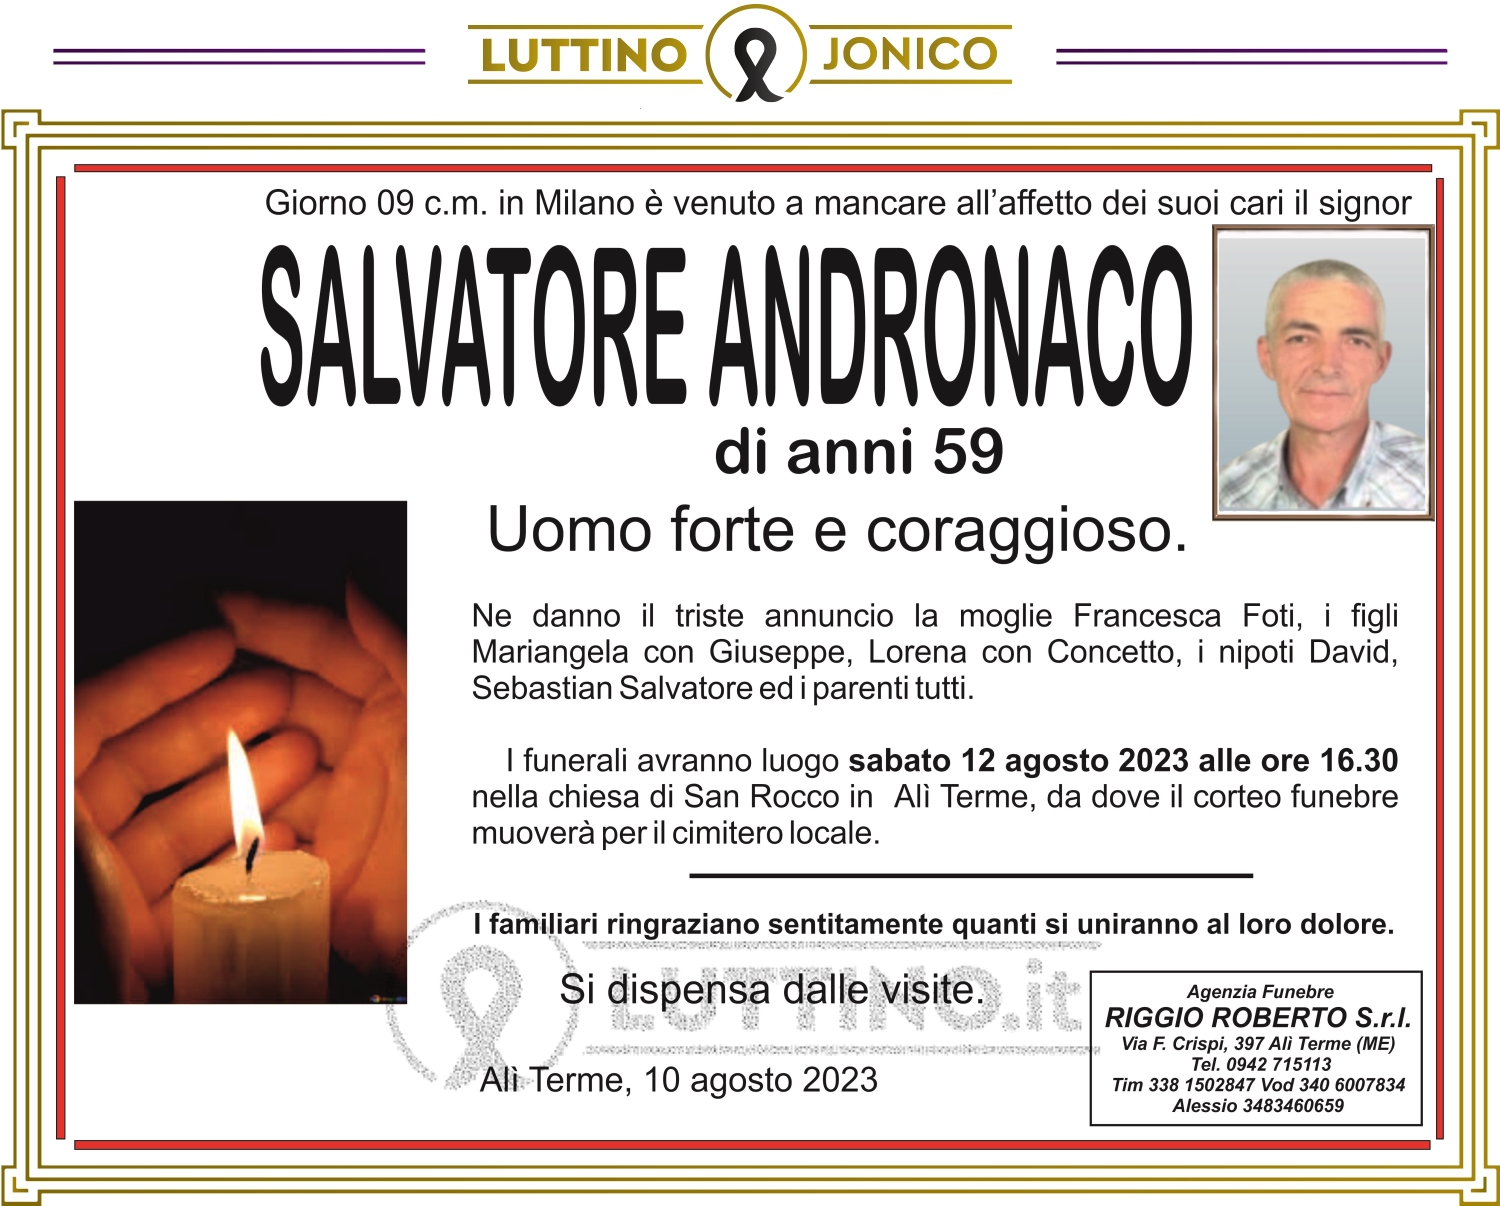 Salvatore Andronaco